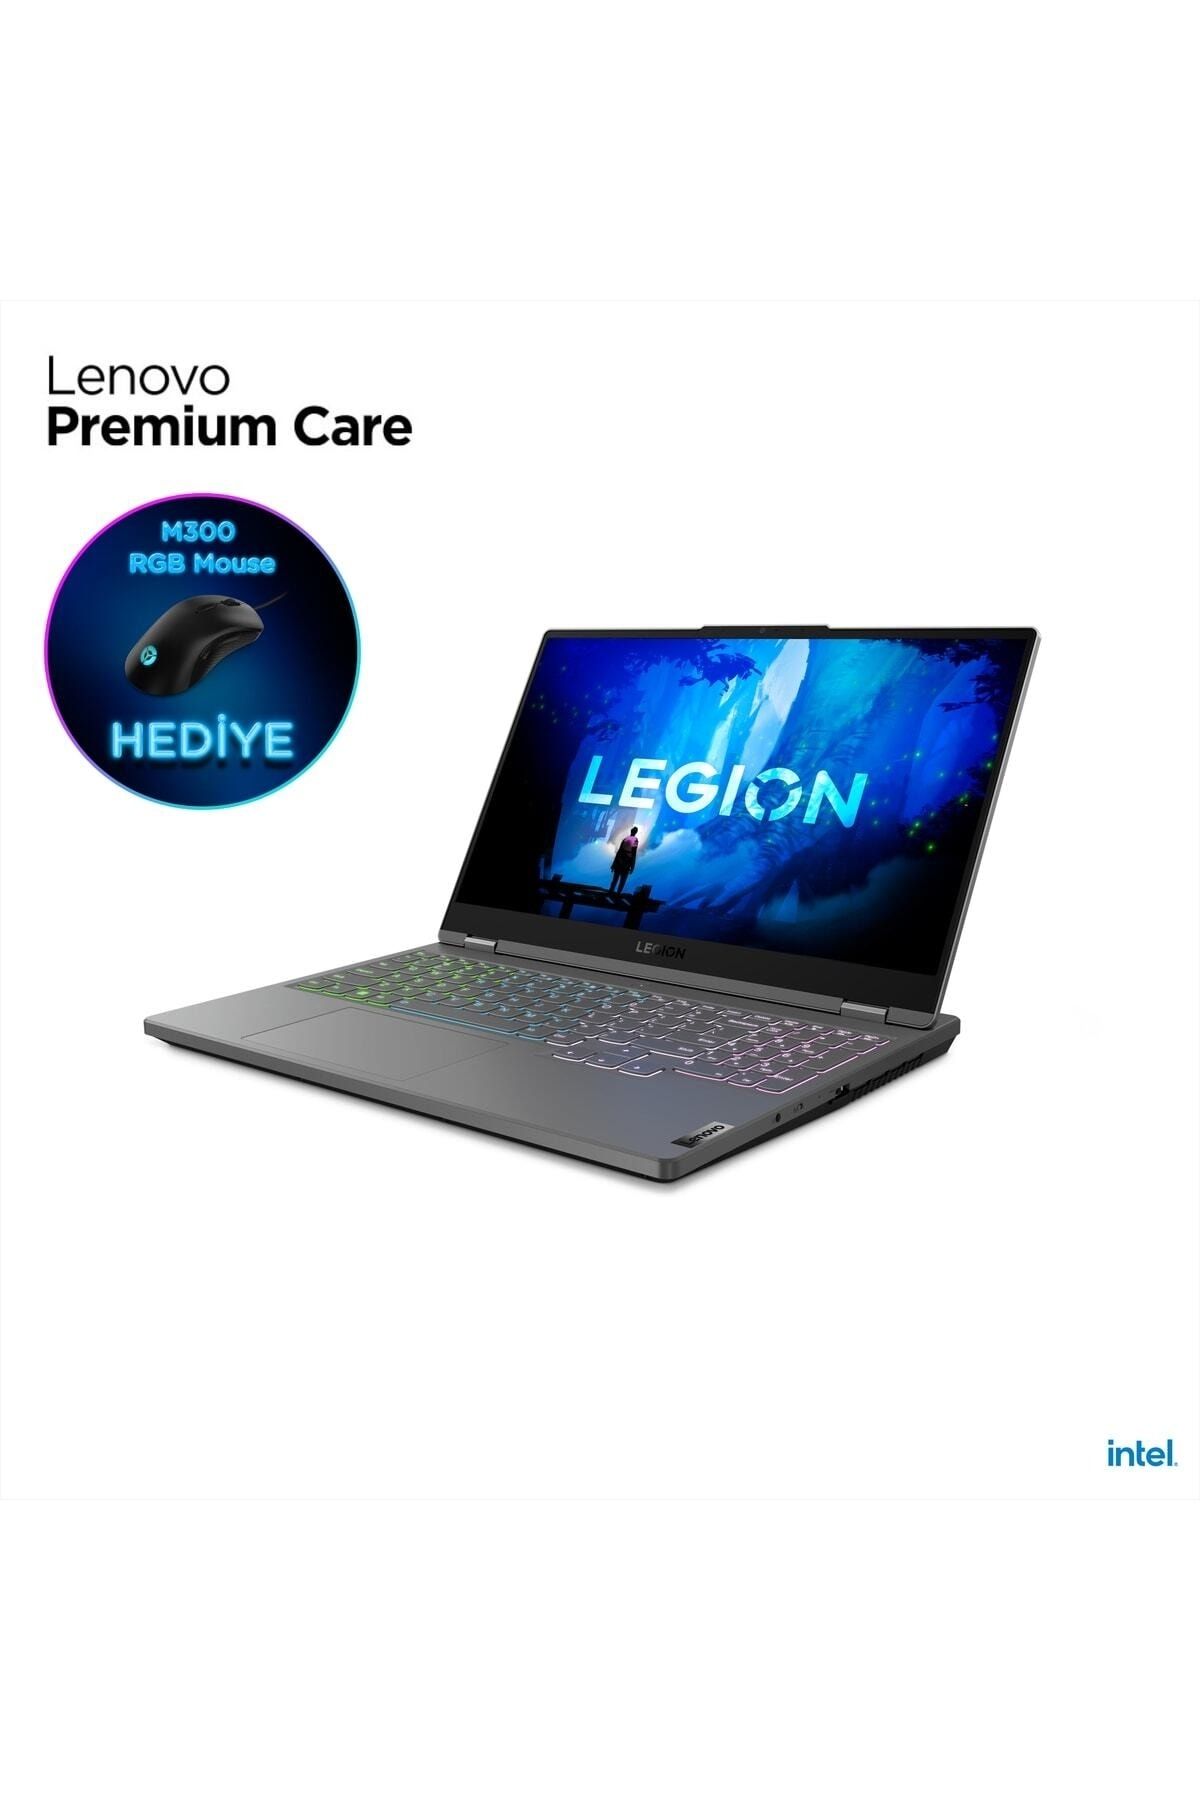 LENOVO Legion 5 82rb00dctx Intel Core I7-12700h 16gb 512gb Ssd Rtx3070 8gb 15.6" Wqhd Dos Gaming Laptop